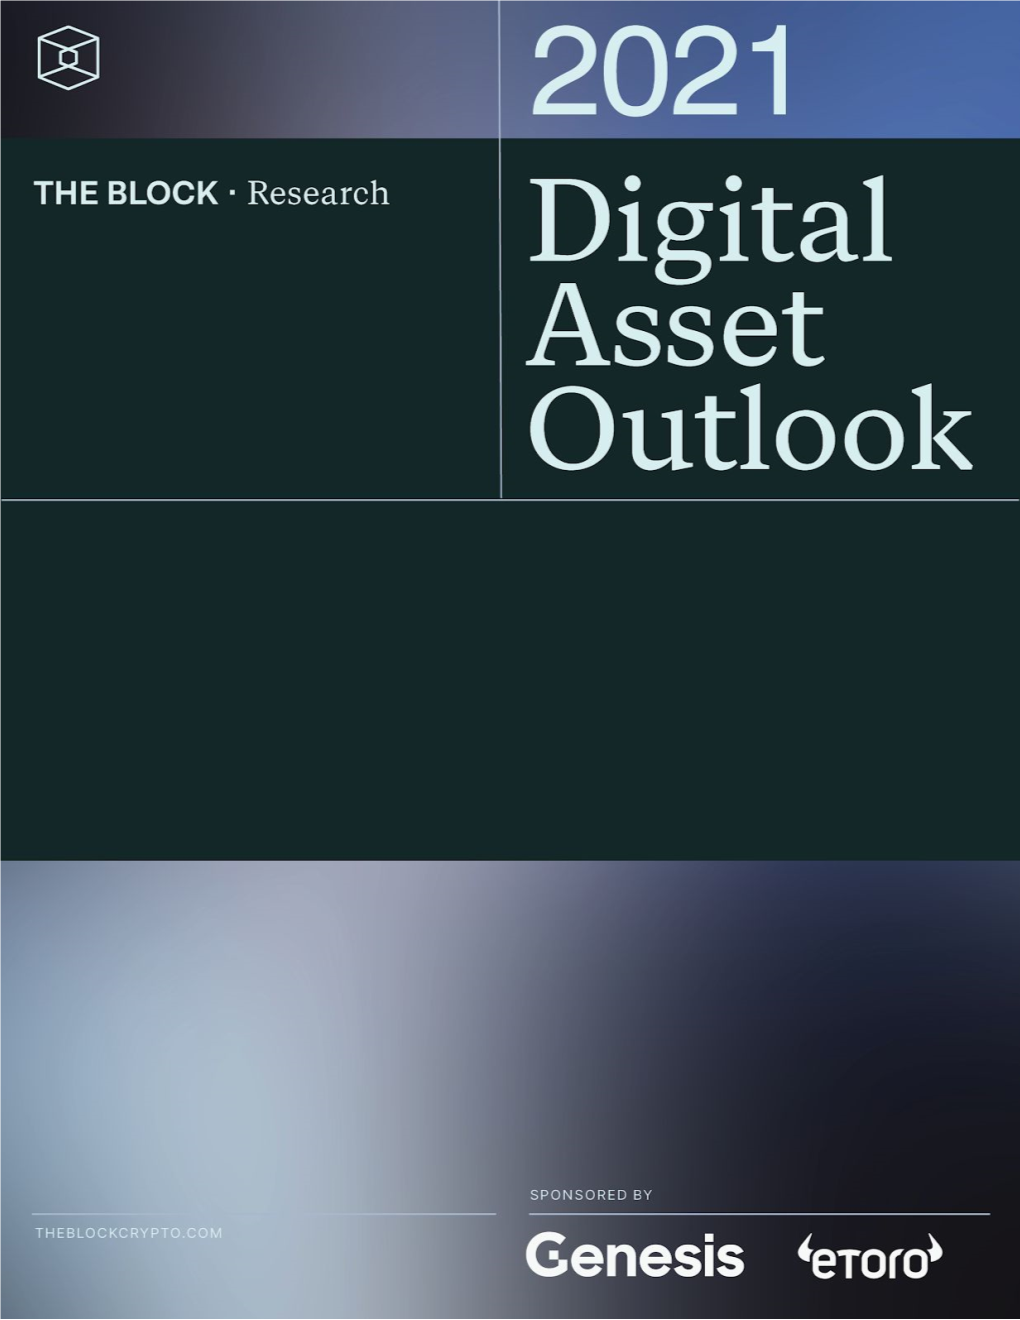 Digital-Asset-2021-Outlook-The-Block